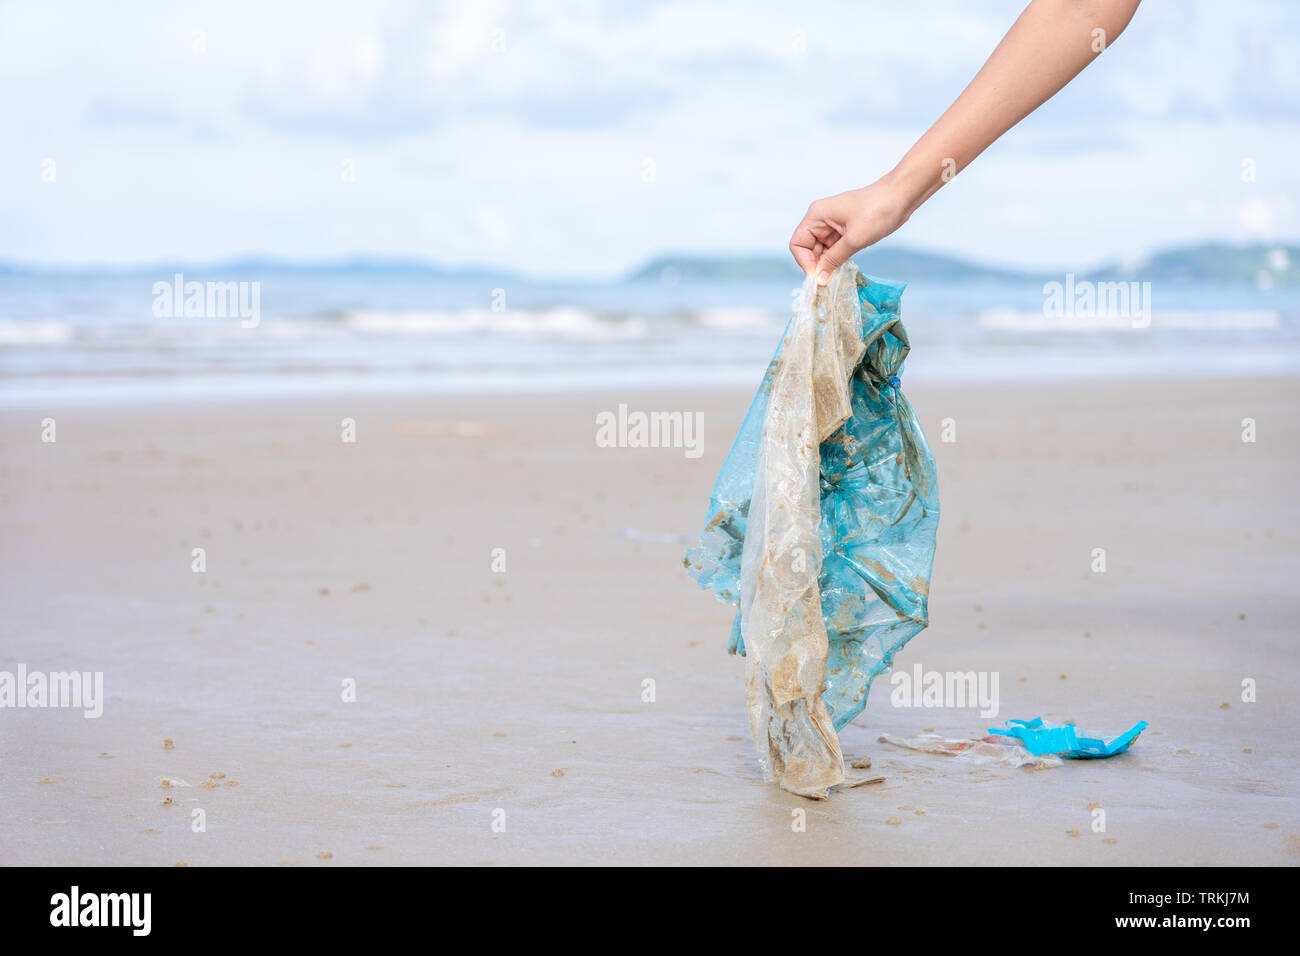 Donna di raccolta a mano fino utilizzato il sacchetto in plastica sulla spiaggia di sabbia, pulizia spiaggia balneare. Inquinamento ambientale, il problema ecologico e di inquinamento marino con Foto Stock